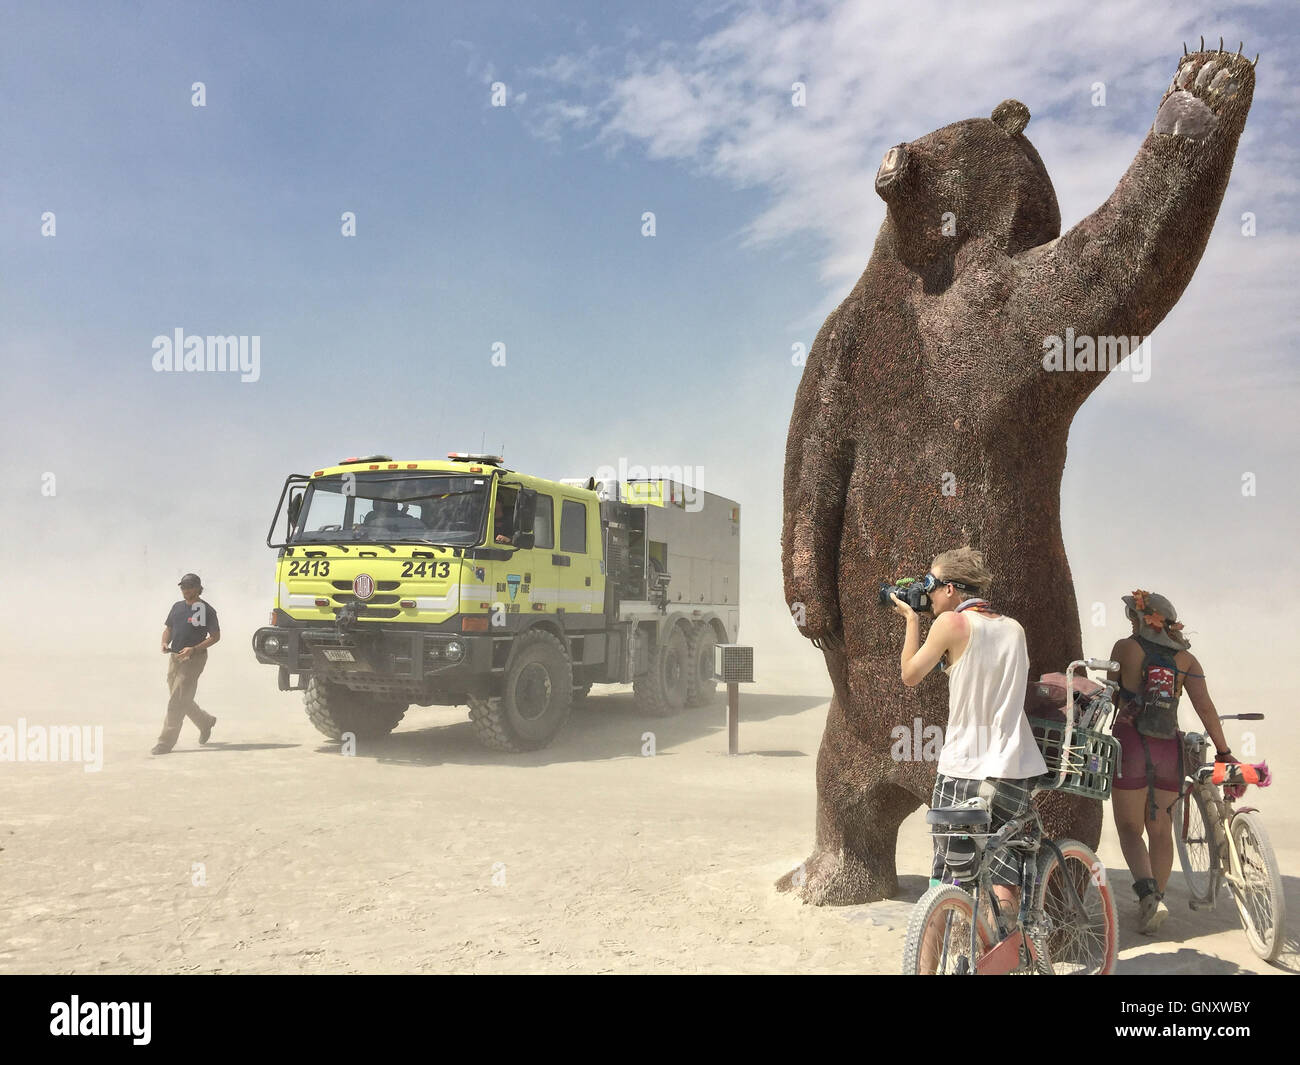 La grande ourse, un 14 pieds de hauteur, grizzly bear sow art installation au cours de l'assemblée annuelle du Festival du désert Burning Man, 30 août 2016 à Black Rock City, Nevada. Le festival annuel attire 70 000 visiteurs dans l'une des régions les plus isolées et les déserts inhospitaliers en Amérique. Banque D'Images